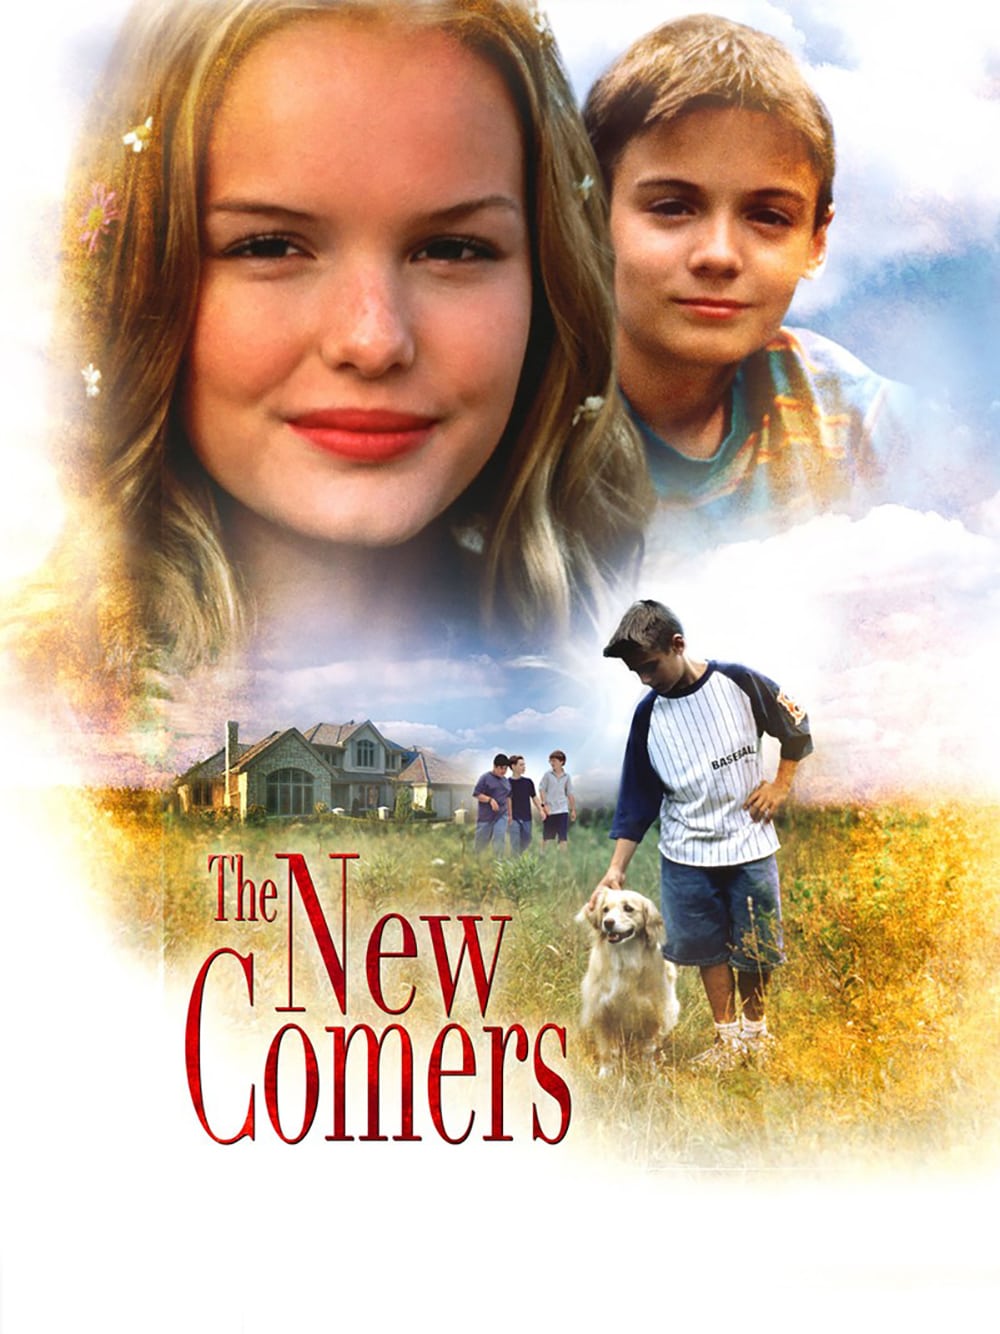 Plakat von "The Newcomers"